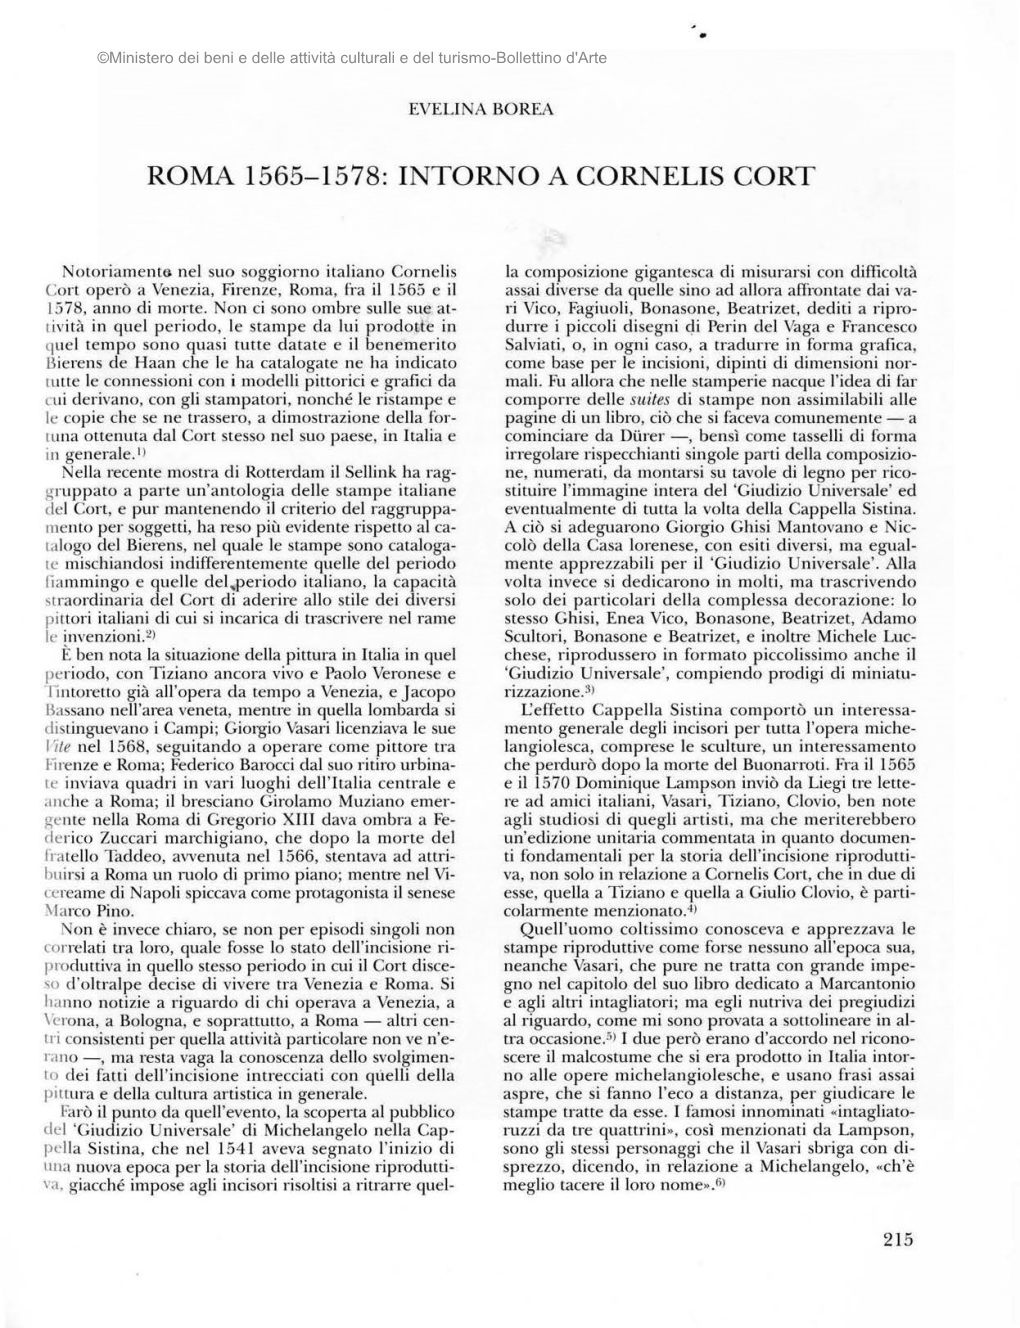 Roma 1565-1578: Intorno a Cornelis Cort